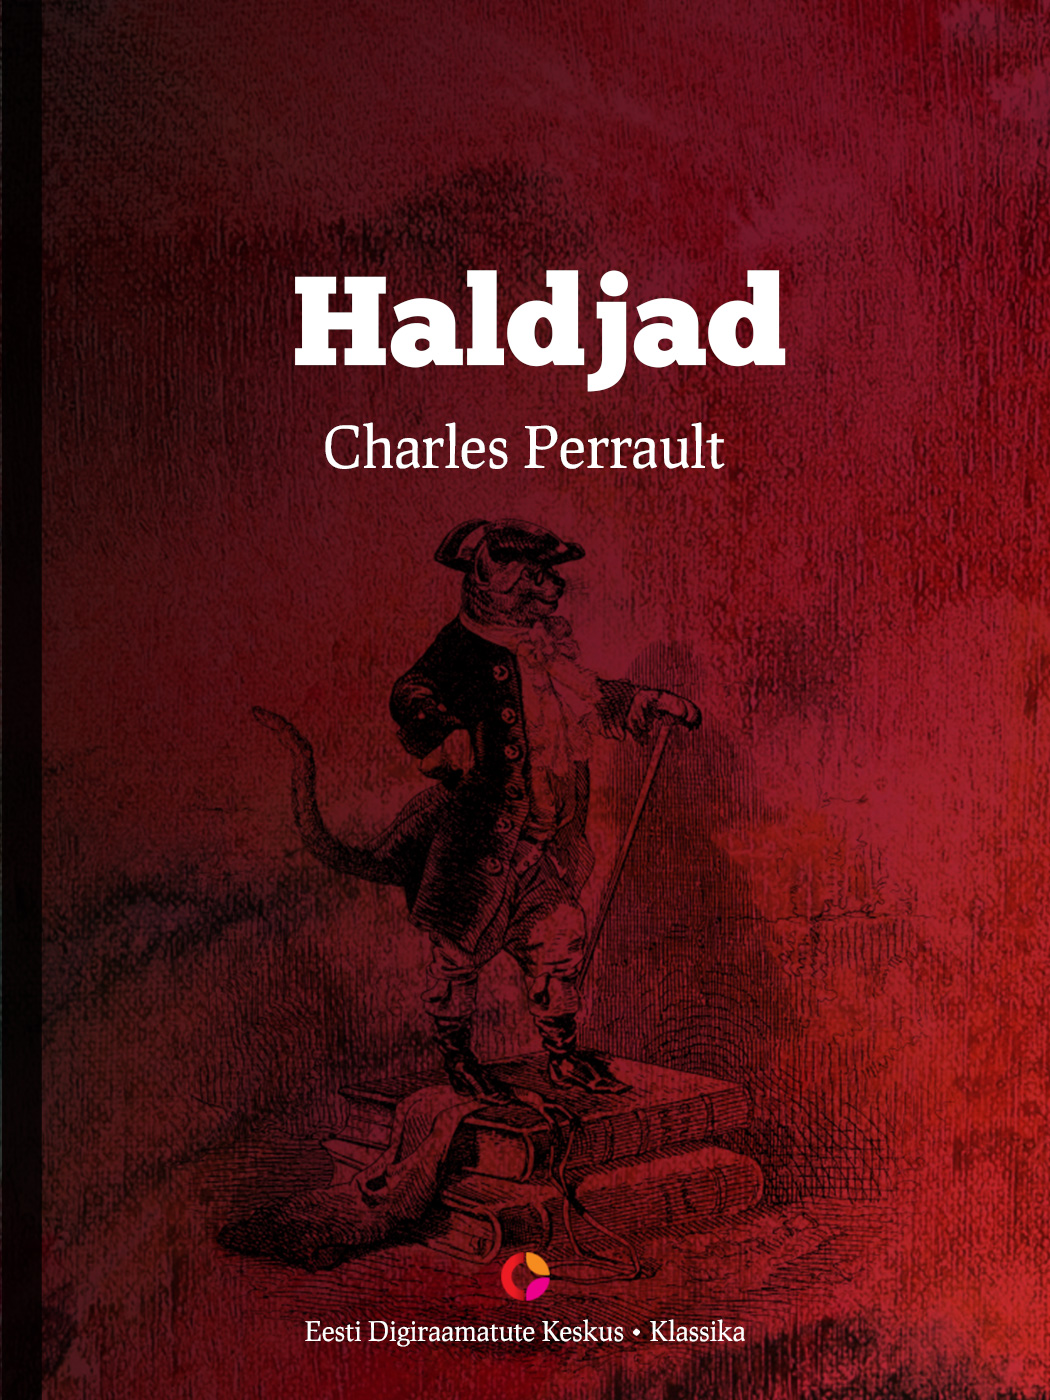 Книга Haldjad из серии , созданная Charles Perrault, может относится к жанру Зарубежная классика, Зарубежная старинная литература, Сказки. Стоимость электронной книги Haldjad с идентификатором 21184932 составляет 126.89 руб.